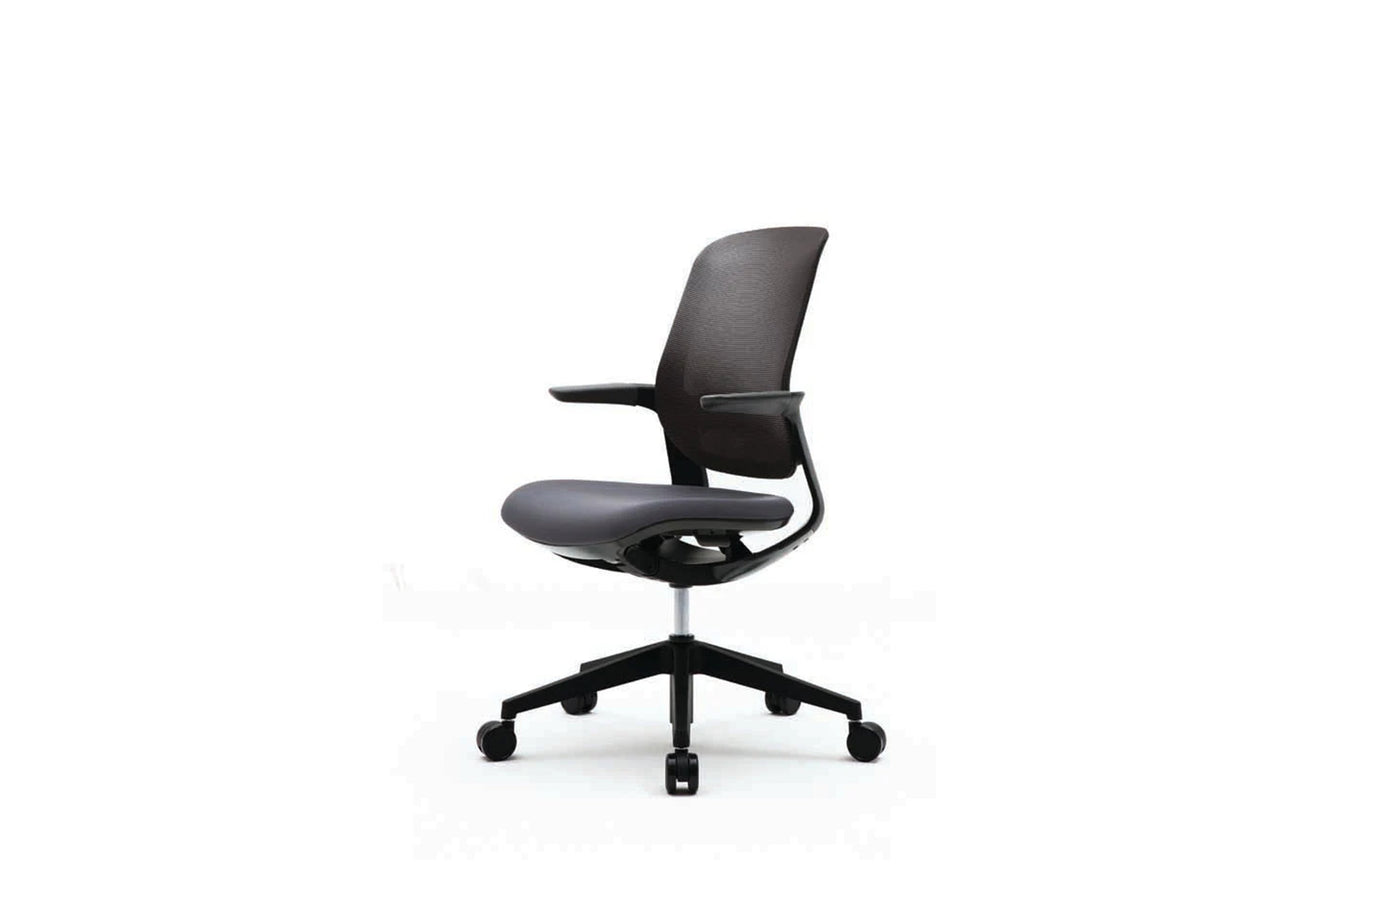 FURSYS FLIGHT T25 Black Frame Home Office Desk Chair - SIHOO AustraliaFURSYS FLIGHT T25 Black Frame Home Office Desk Chair